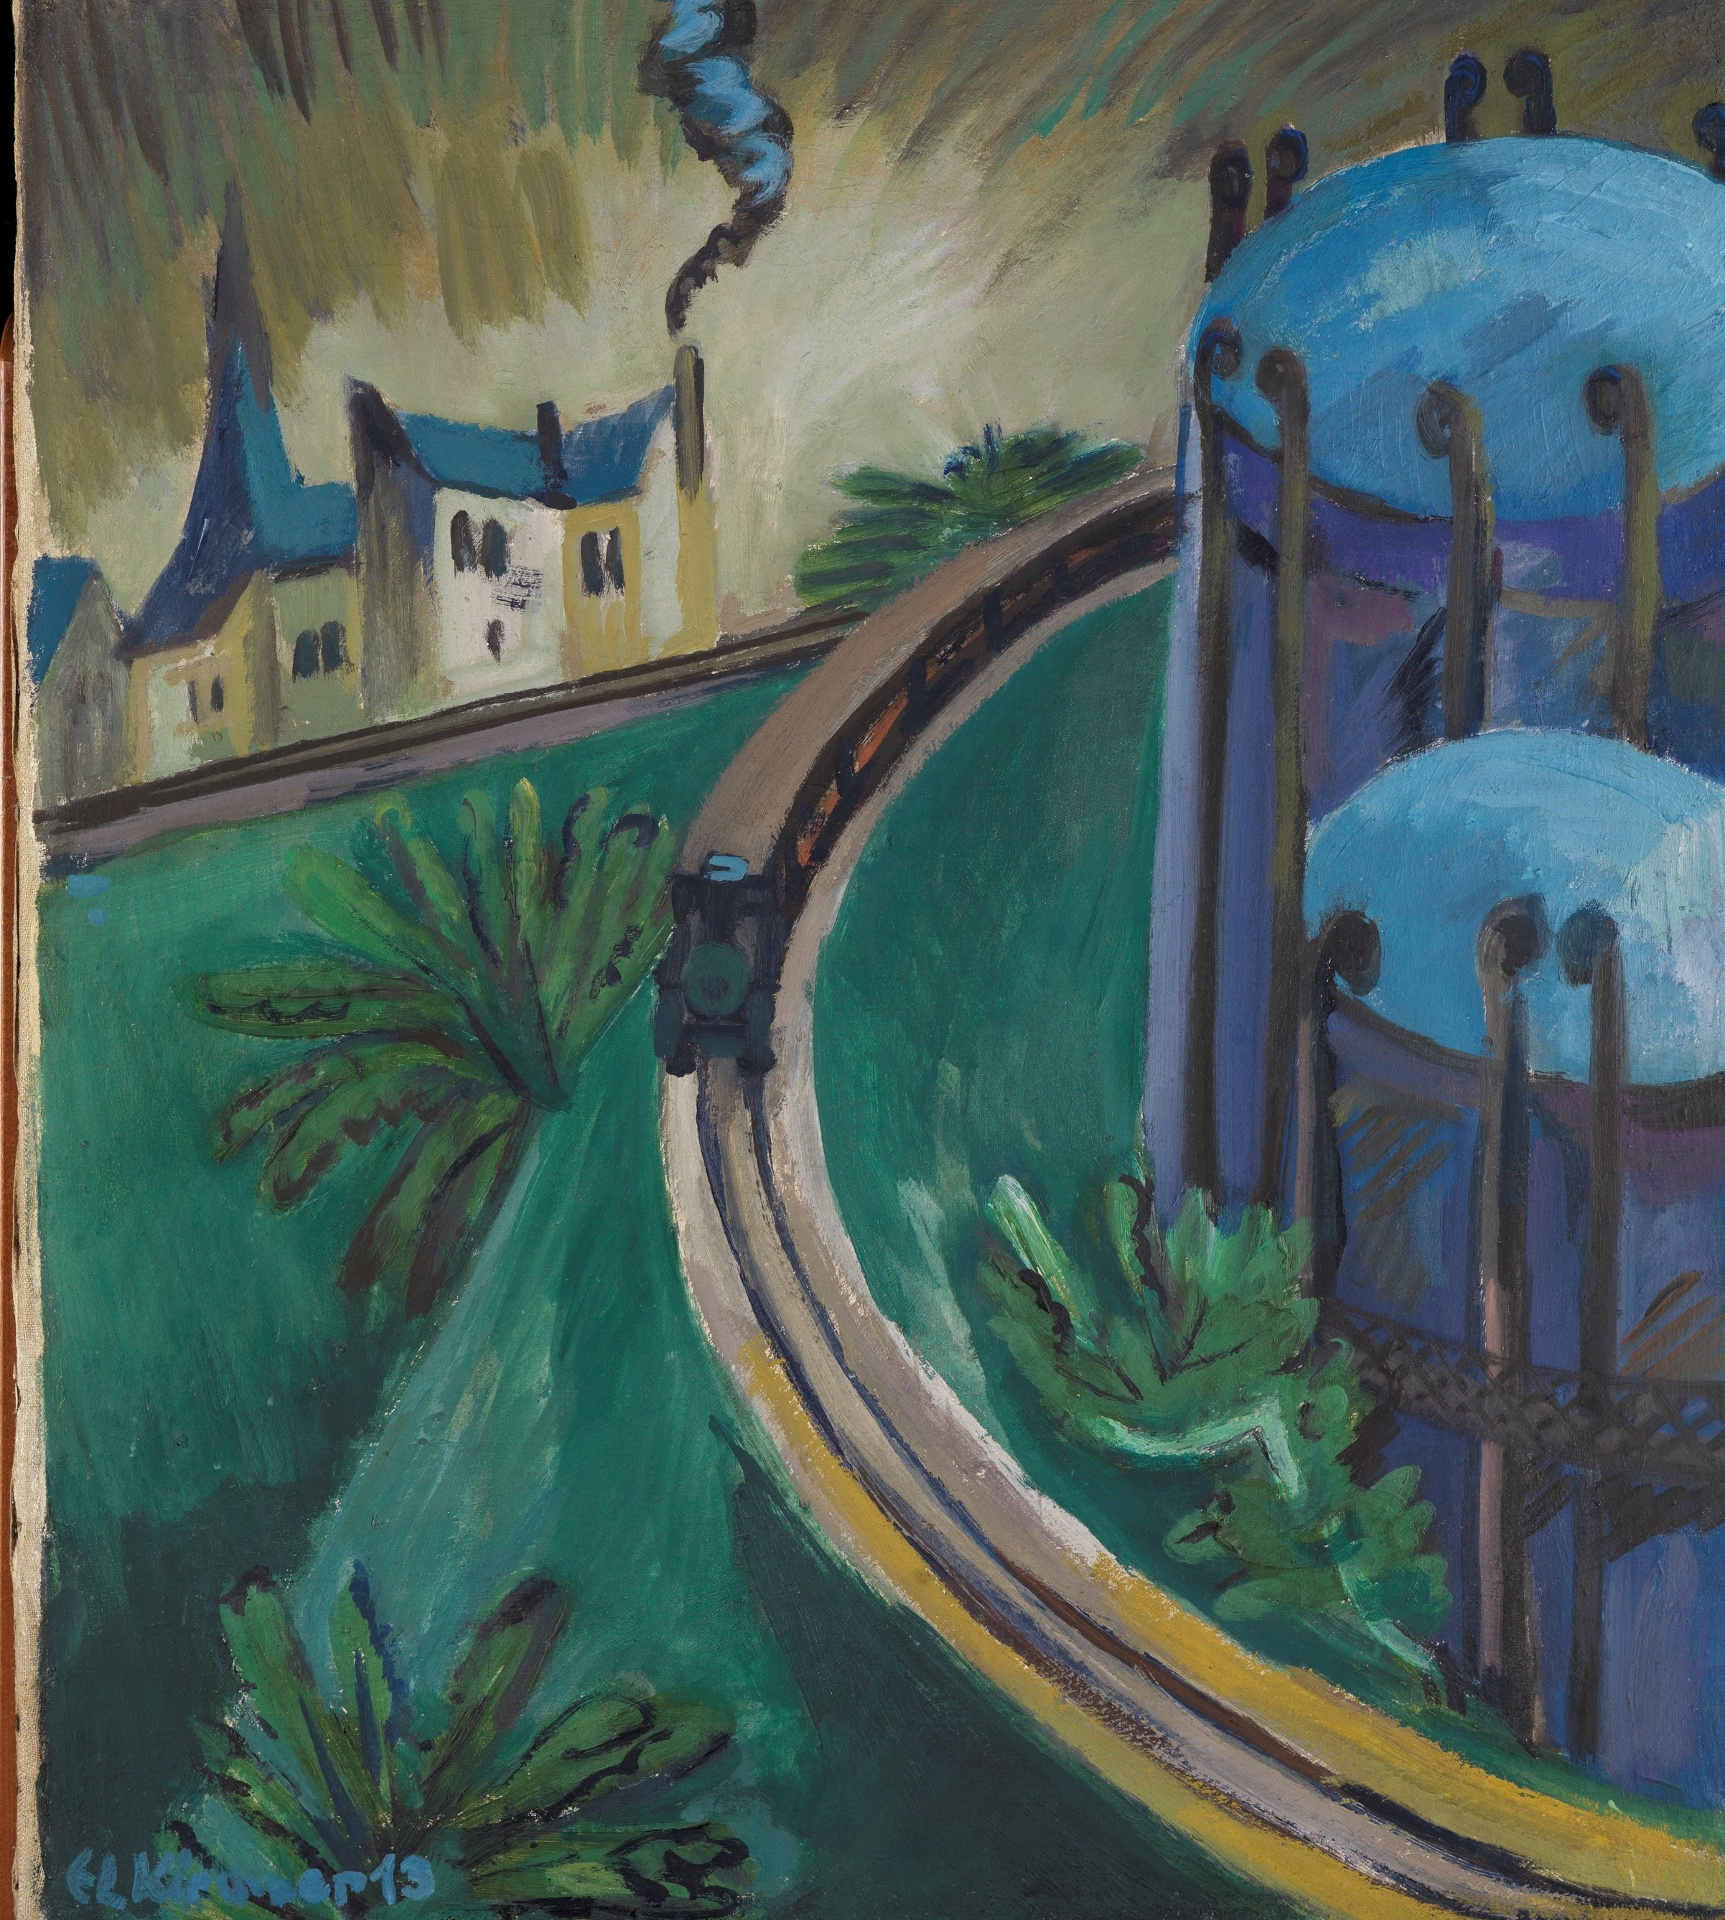 Kirchners Gemälde Gaskessel und Vorortsbahn. Das Gemälde ist sehr abstrakt und zeigt in der Vogelperspektive die Bahngleise mit Bahn in einer Stadtlandschaft.